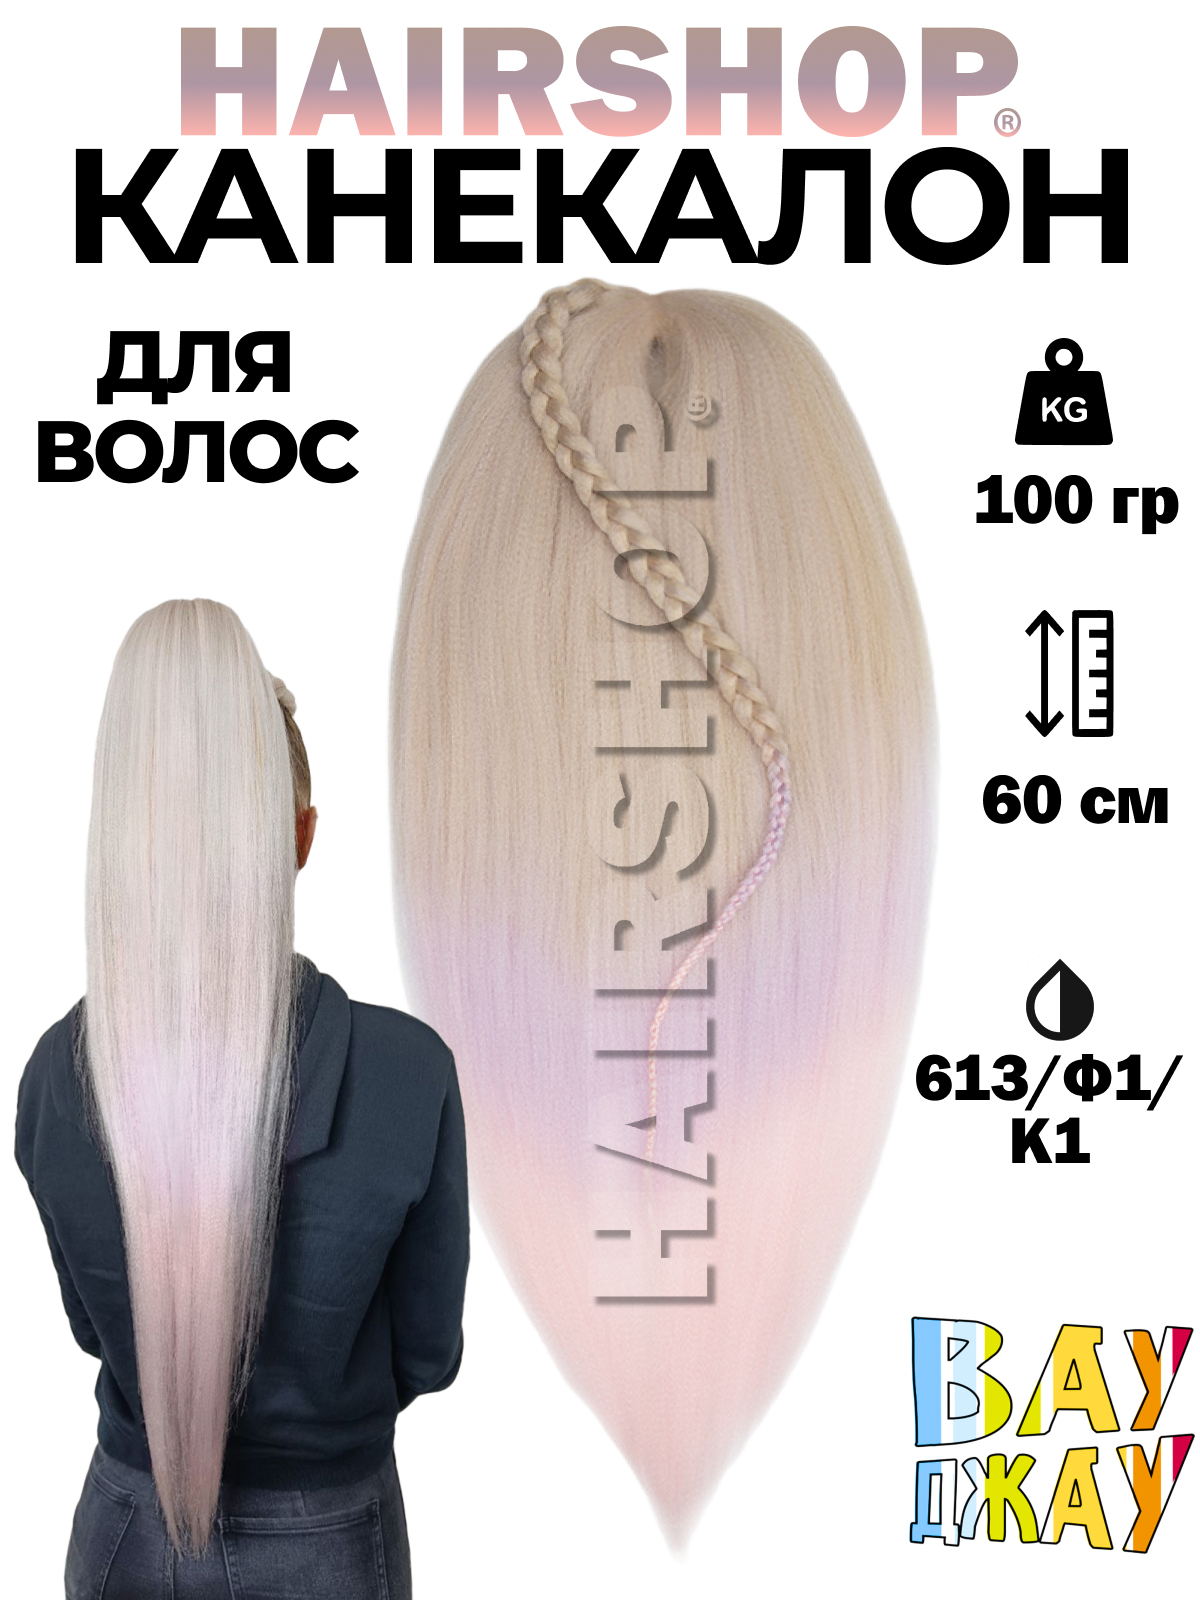 Канекалон HAIRSHOP Вау Джау 613-Ф1-К1 1,3м 100г Блонд, Светлый фиолетовый, Нежно-розовый